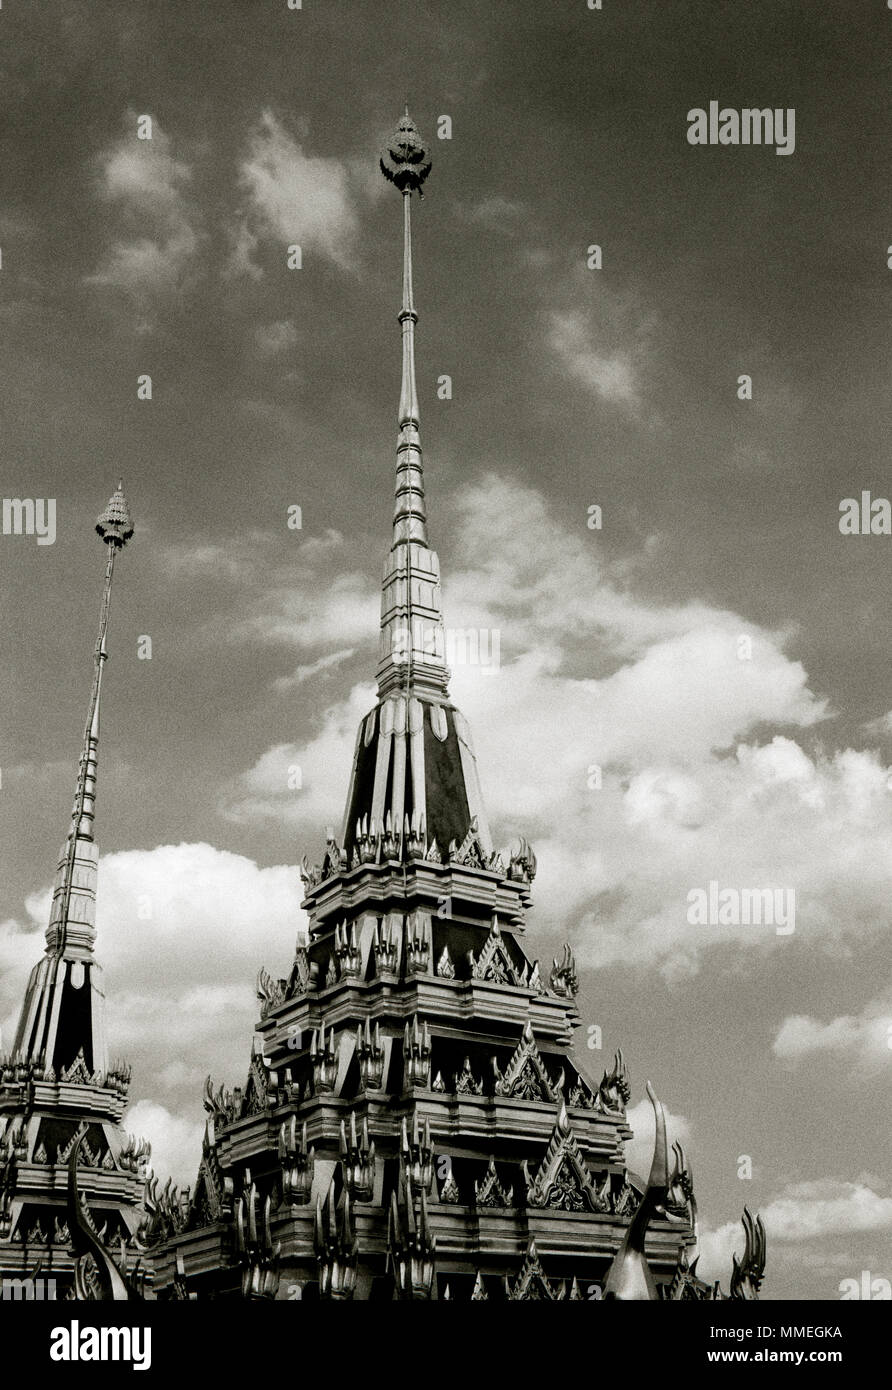 Les clochers de la Buddhist Temple Loha Prasat Metal Château de Wat Ratchanadda à Bangkok en Thaïlande en Asie du Sud-Est Extrême-Orient. Billet d'architecture B&W Banque D'Images